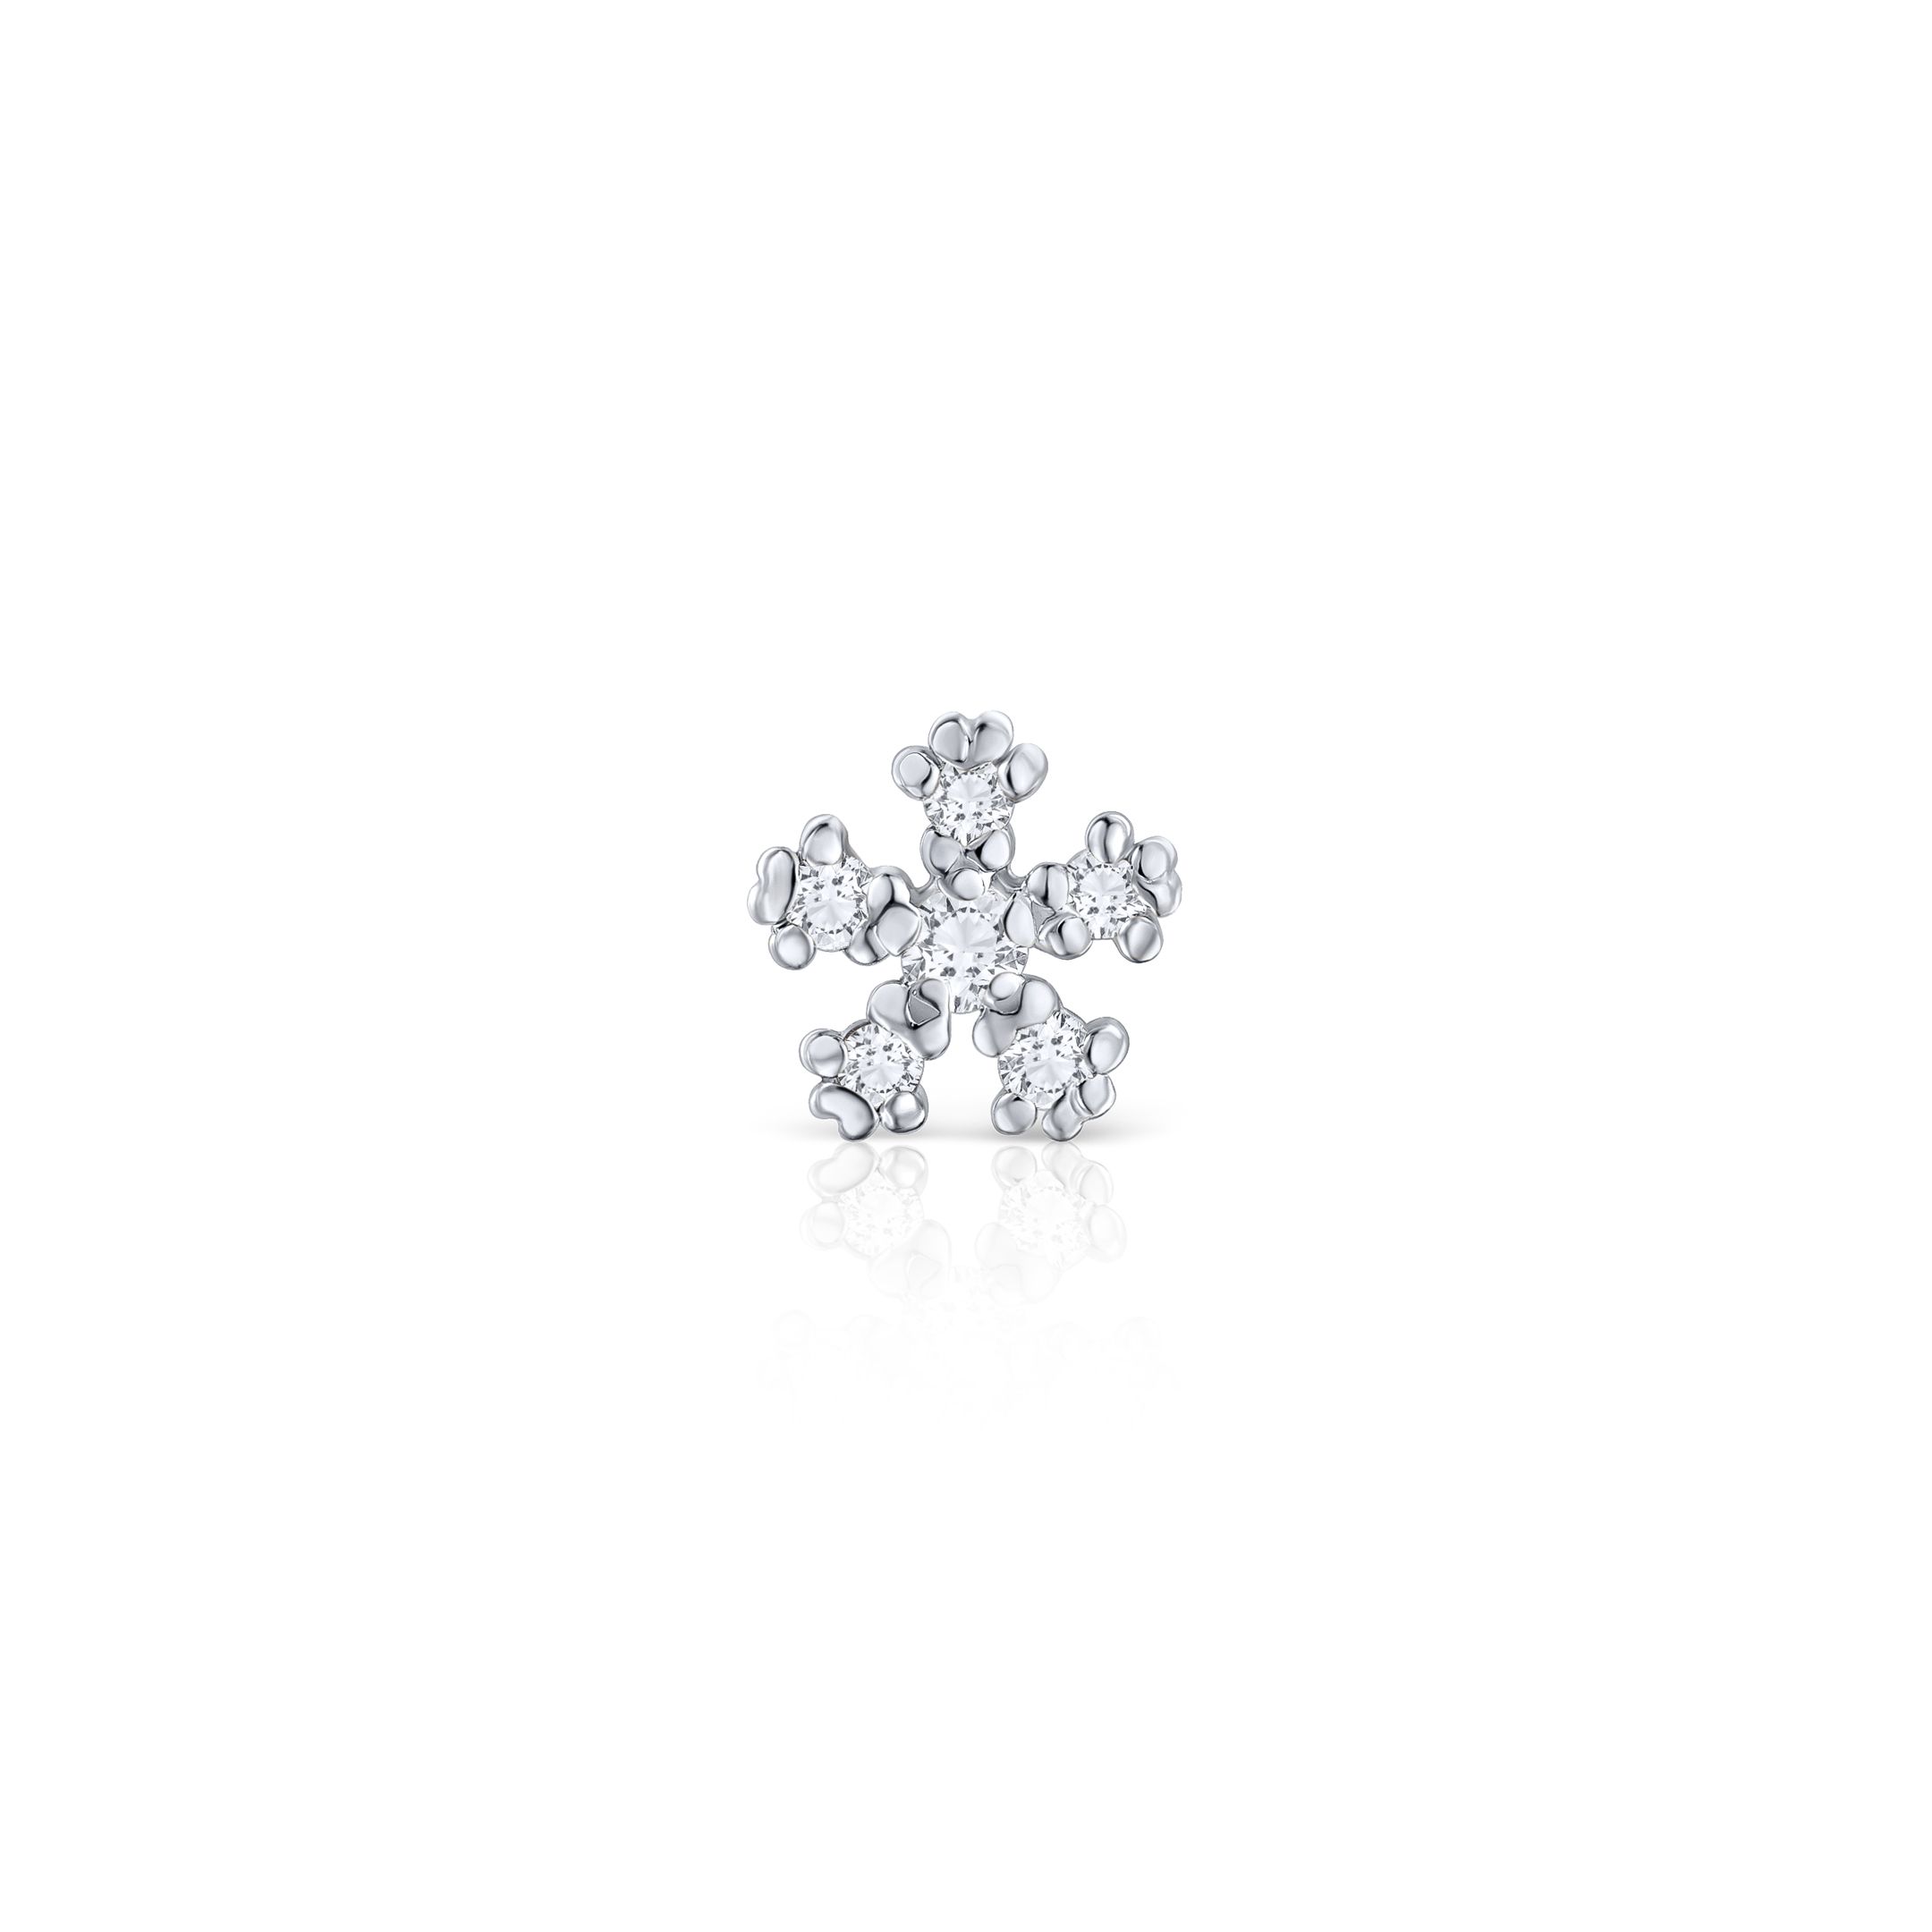 Pendiente Piercing Star Petals de Diamantes en Oro Blanco de 18 Kt